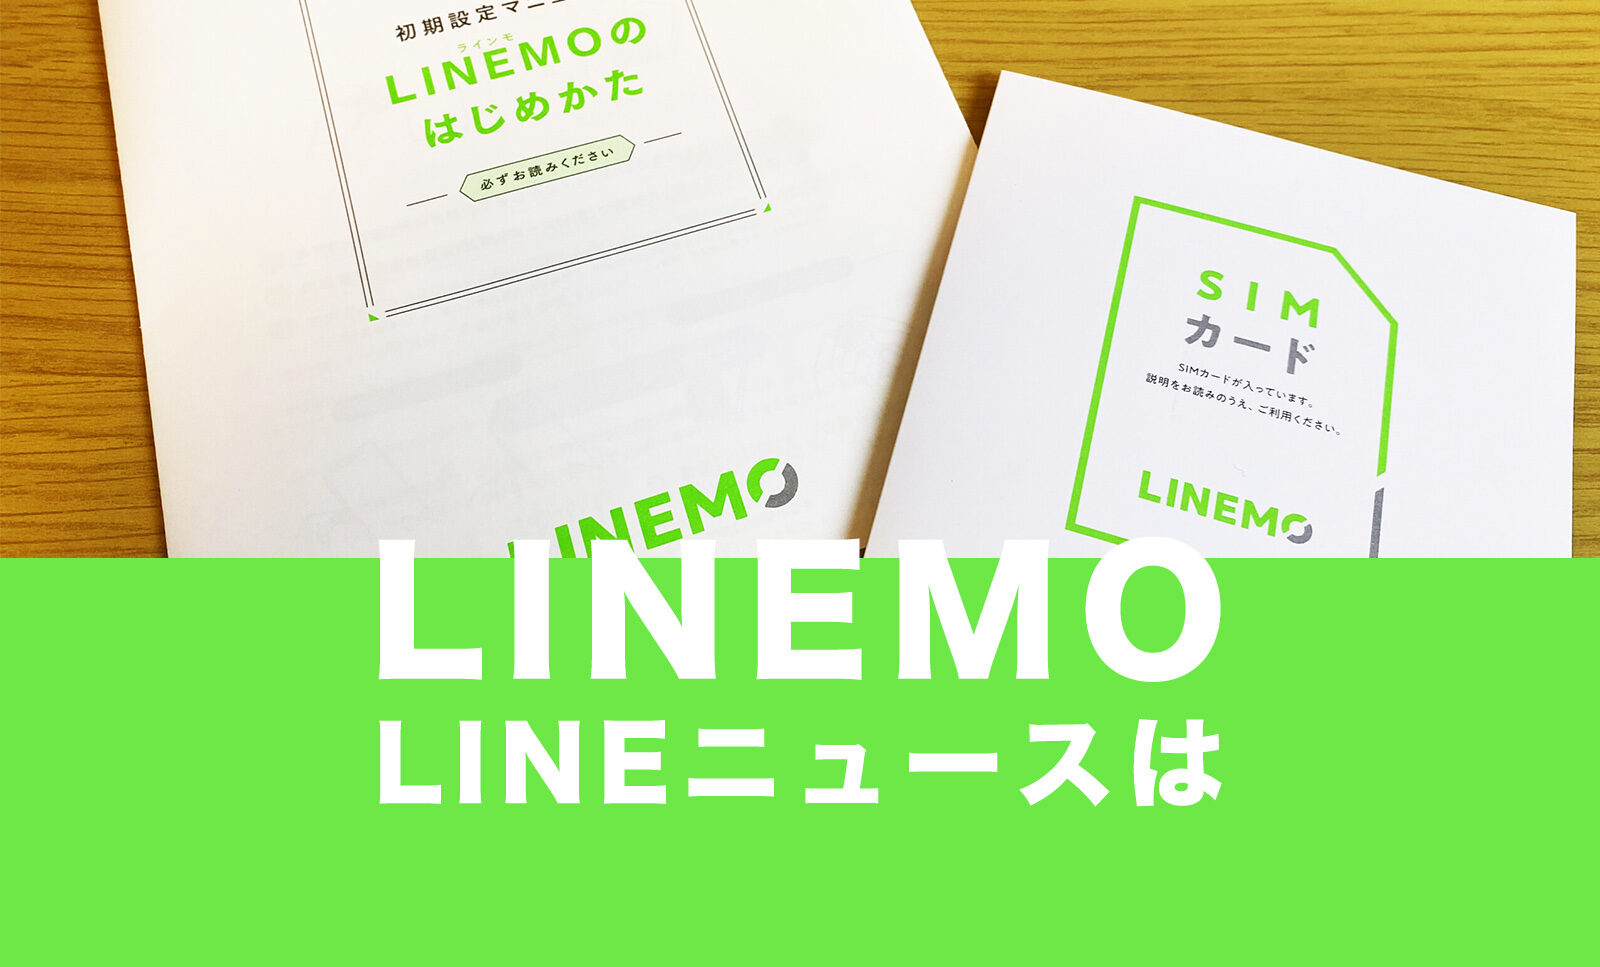 LINEMO(ラインモ)でLINEニュースはギガフリー対象に含まれる？のサムネイル画像